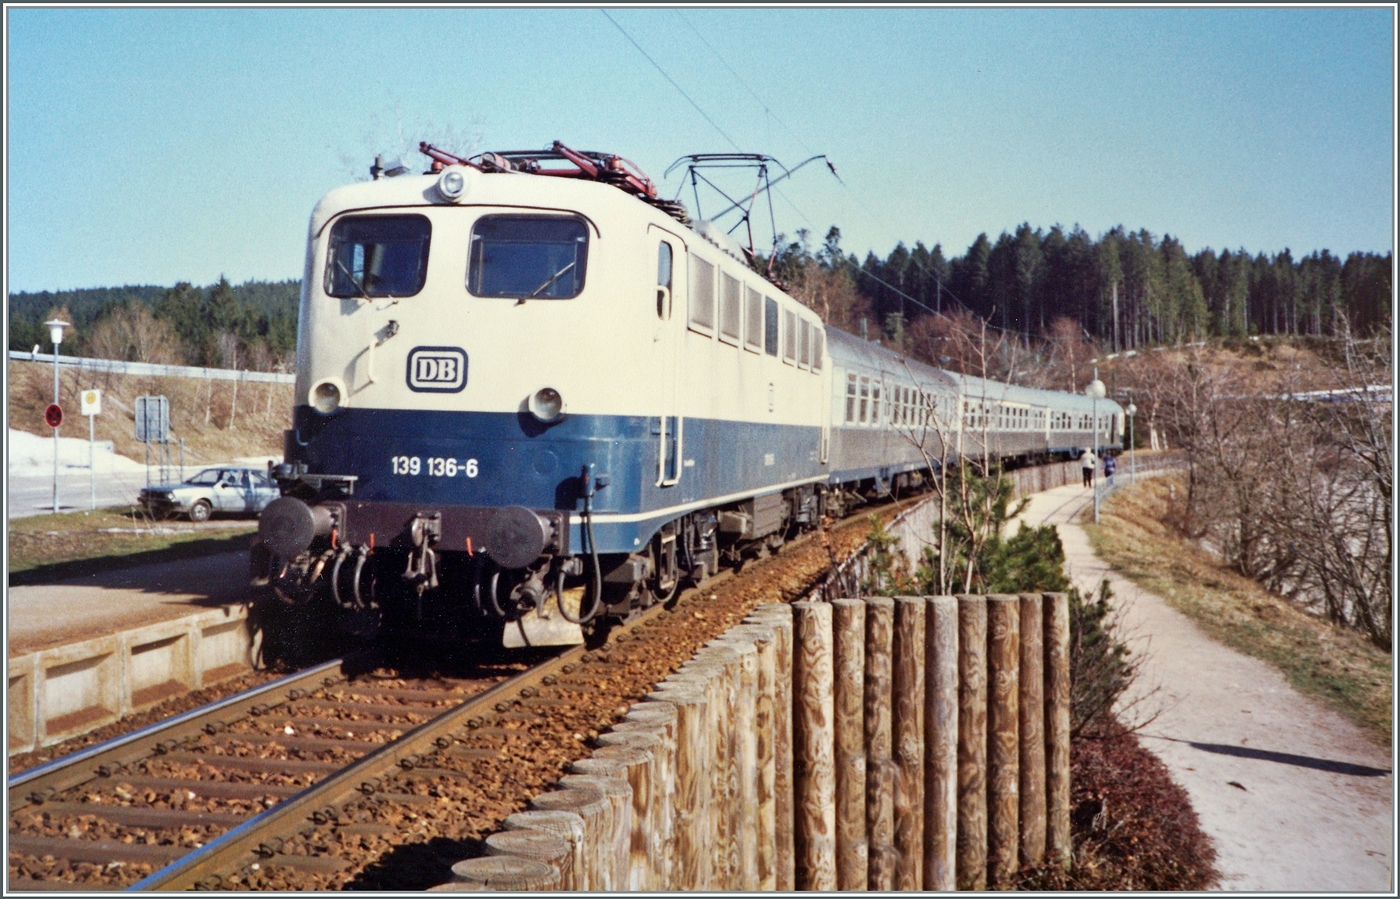 Die DB 139 136-6 erreicht mit ihrem Nahverkerszug auf dem Weg von Seebrugg nach Freiburg i.B. den Halt Schluchsee. 

Analogbild vom April 1988